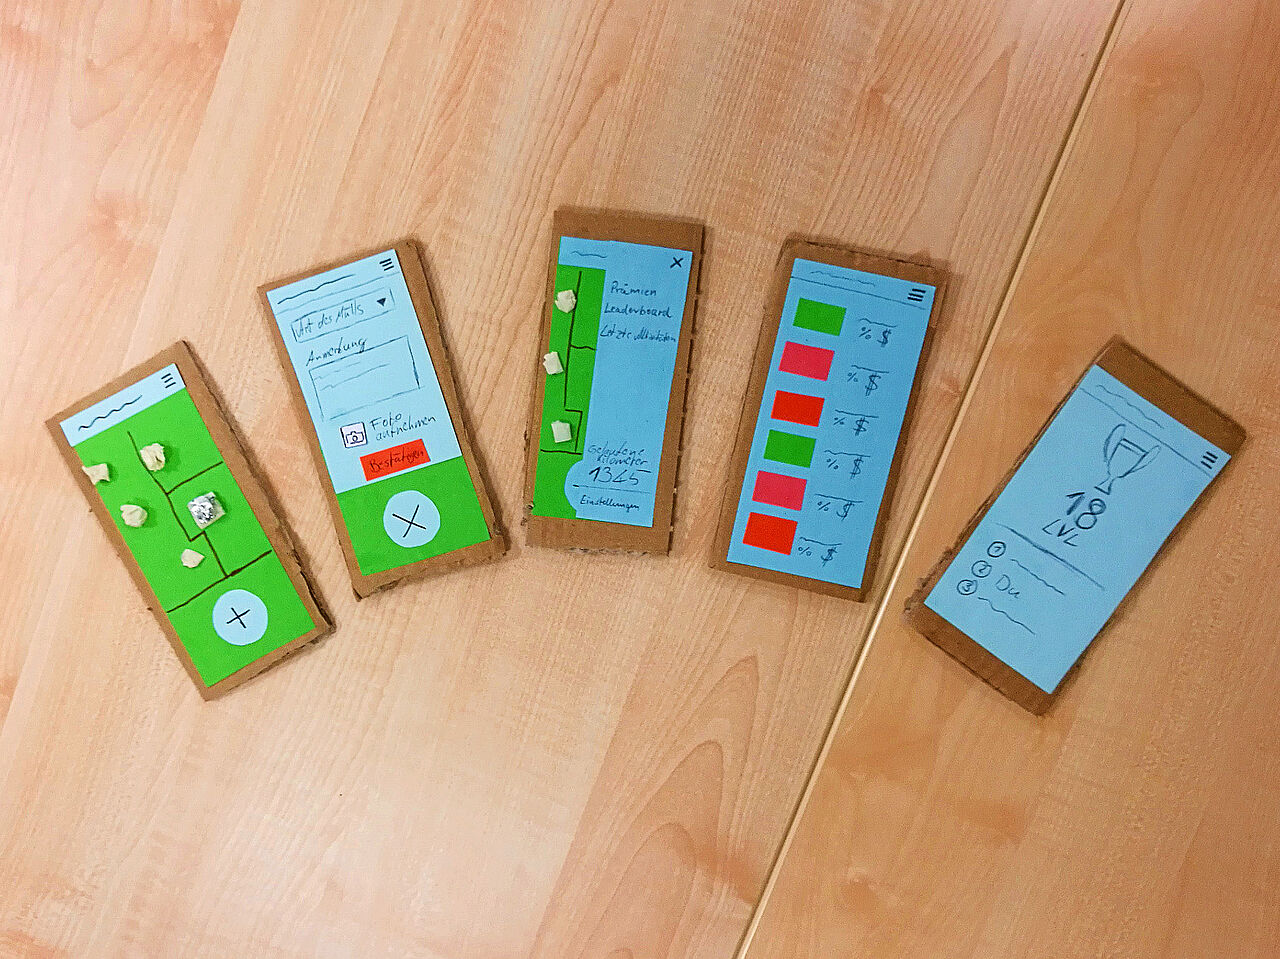 Fünf aus Karton gebastelte Handys mit unterschiedlichen Bildschirmen.